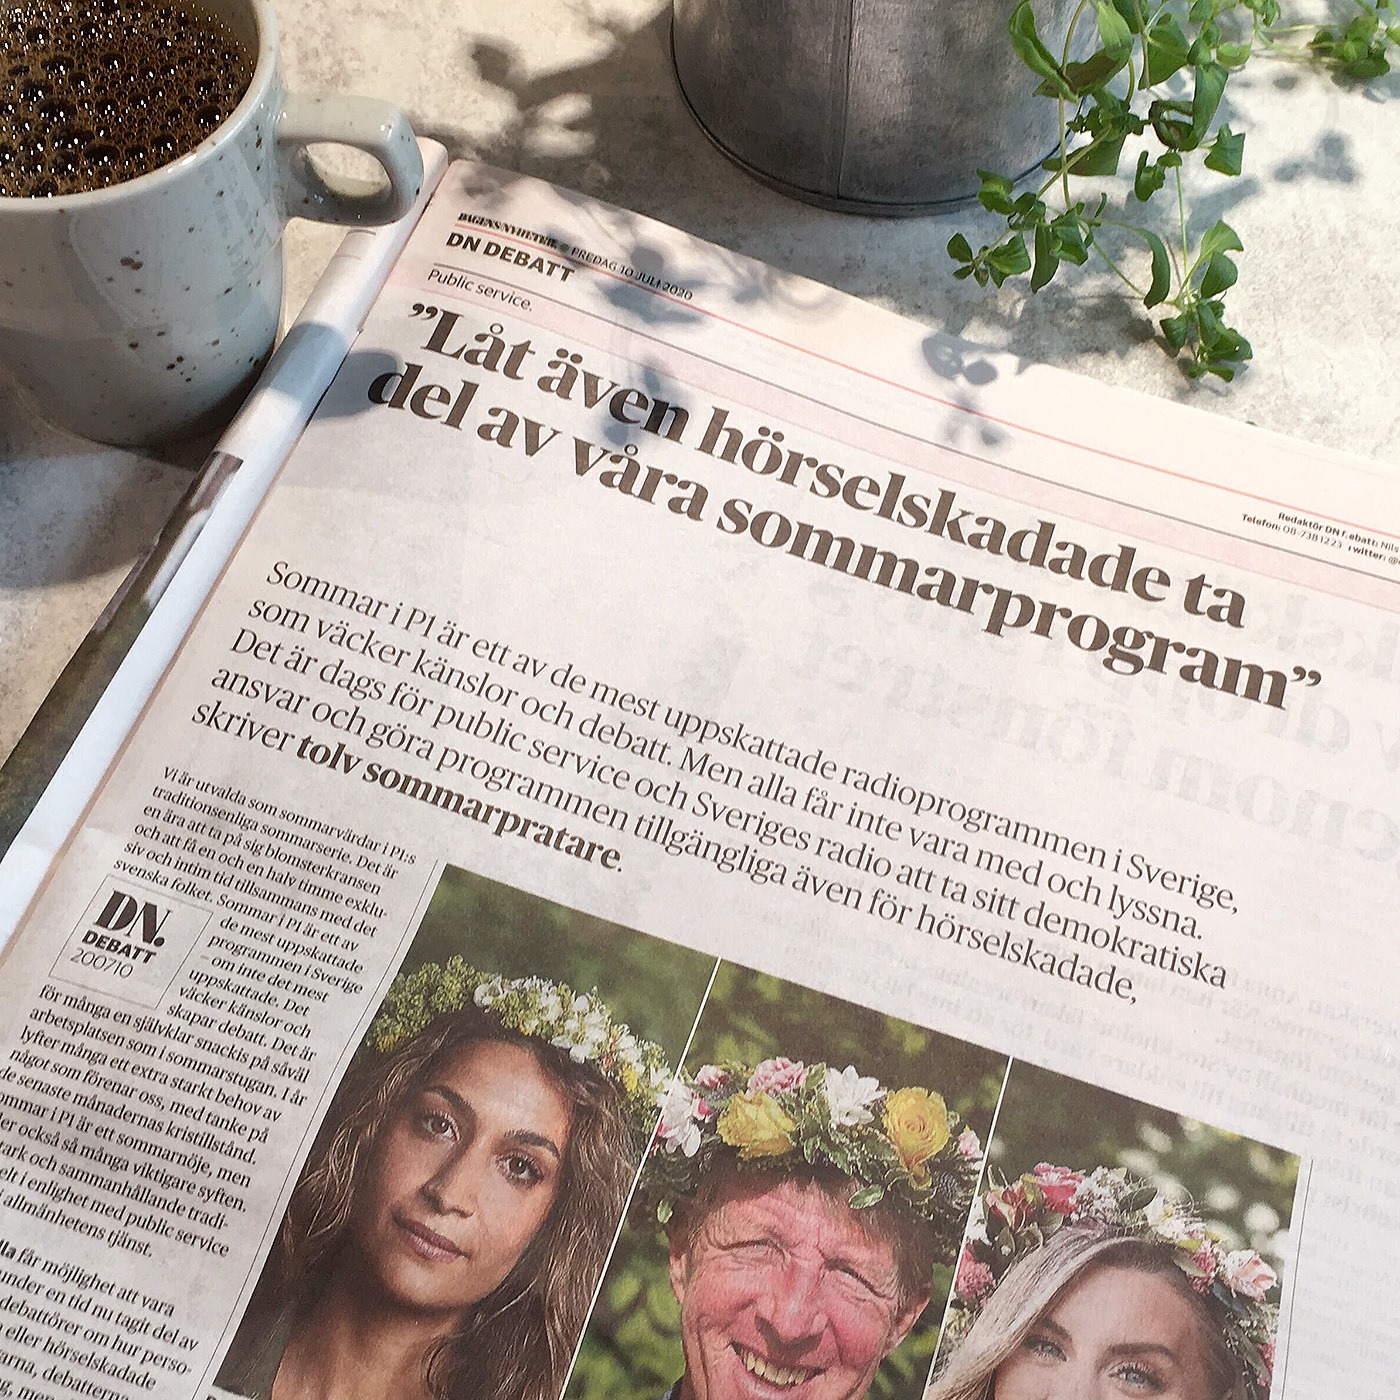 Foto, tidning på bord, kaffekopp, krukväxt. I tidningen rubriken "Låt även hörselskadade ta del av våra sommarprogram", tre porträttbilder av Rojda Sekersöz, Björn Natthiko Lindeblad och Therése Lindgren i blomsterkrans.